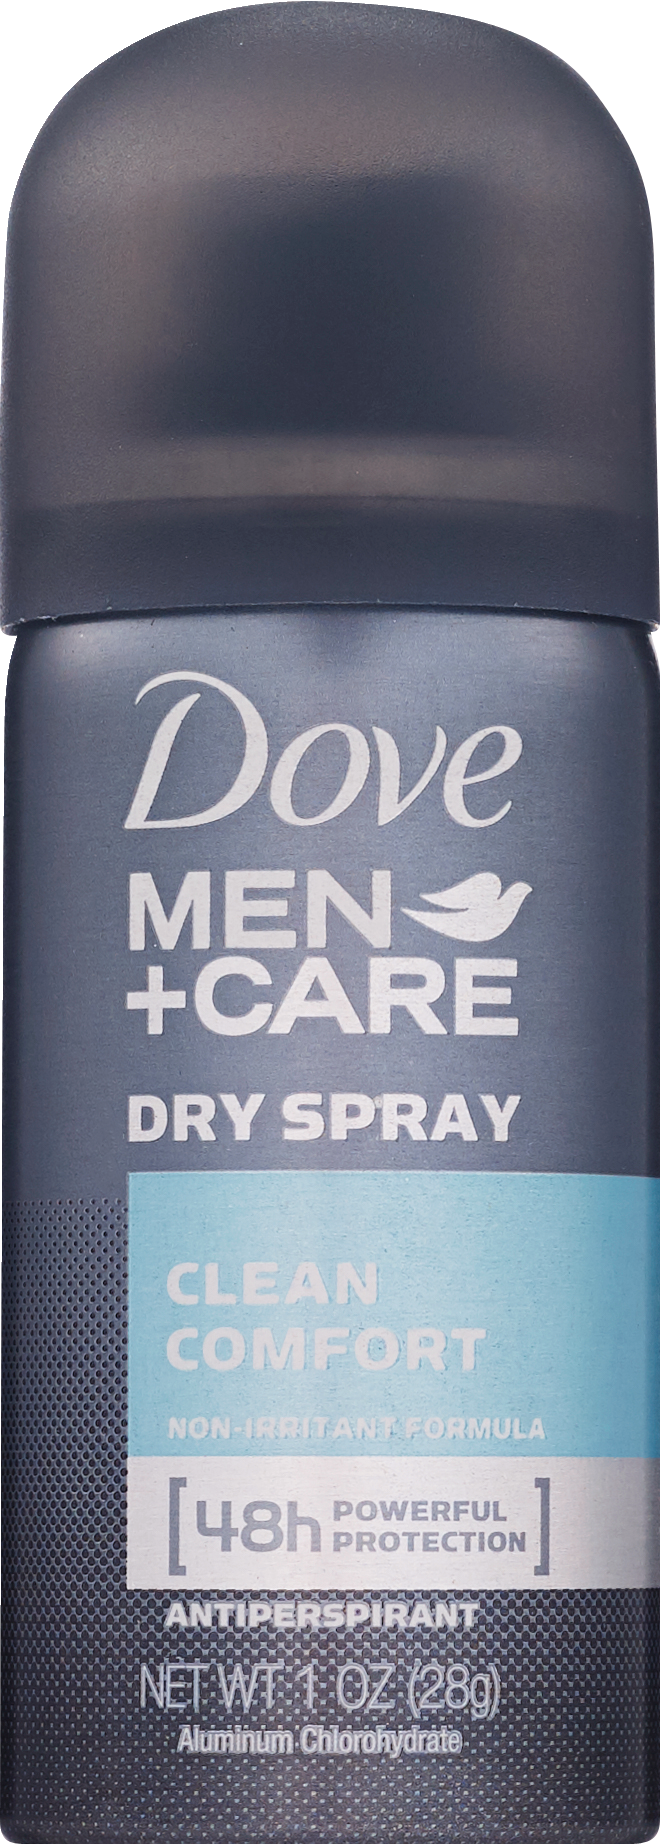 Dove Men+Care Cool Fresh Antiperspirant Dry Spray, 1 OZ